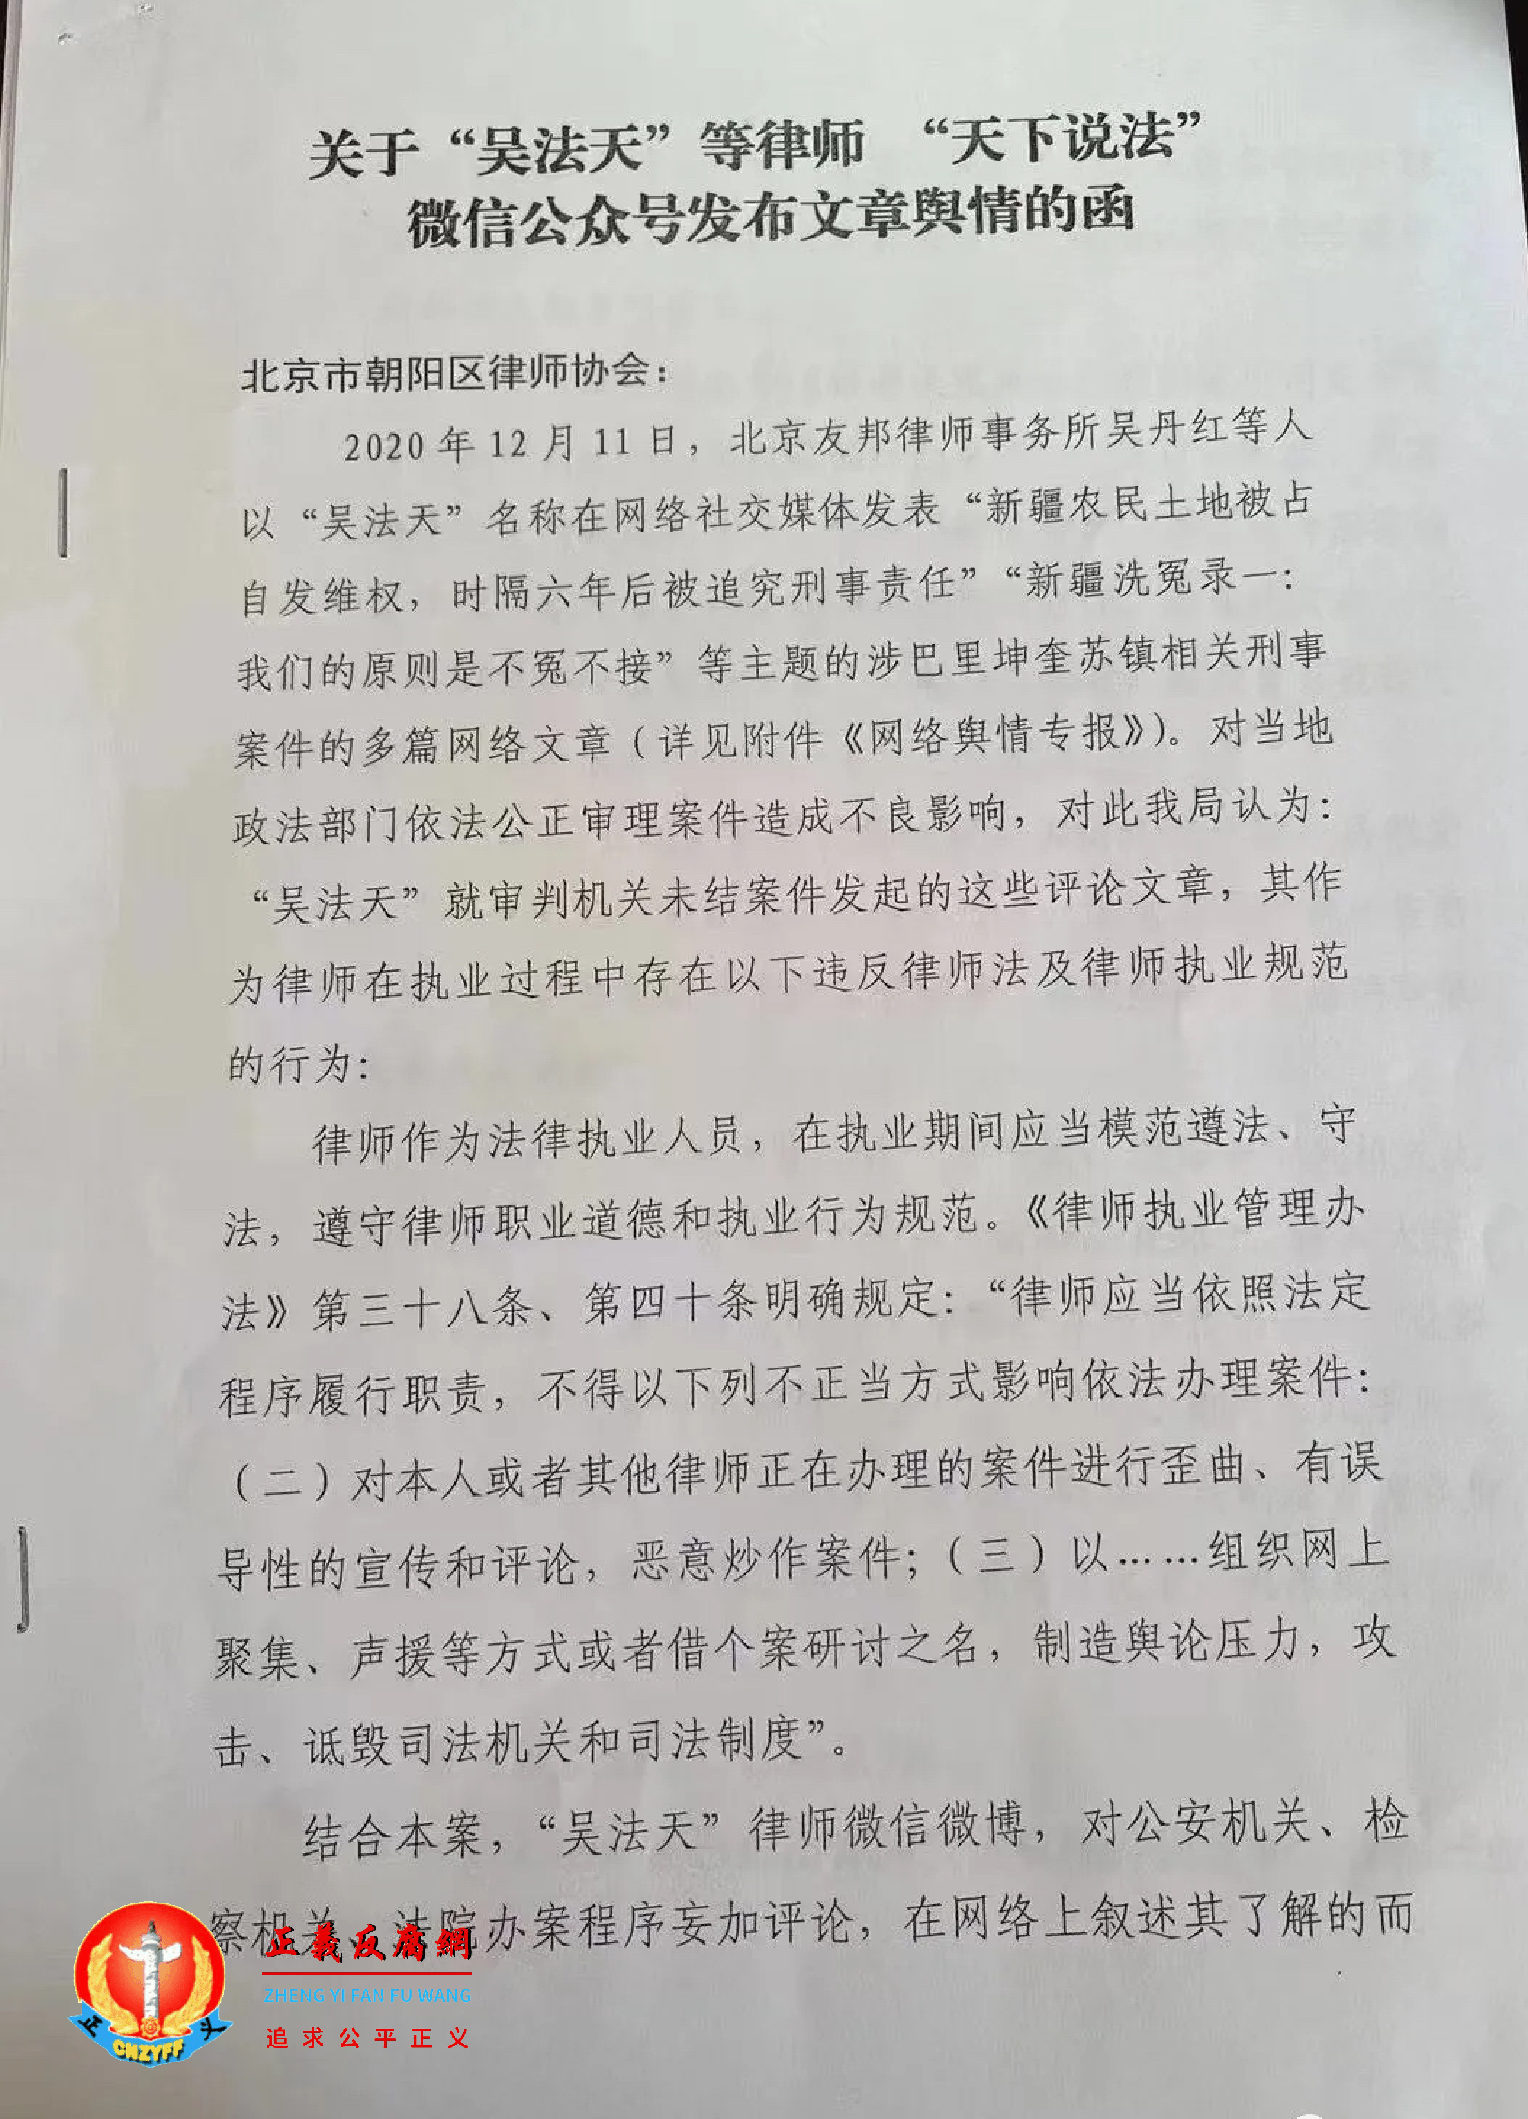 关于“吴法天”等律师“天下说法”微信公众号发布文章舆情的函第一页.png